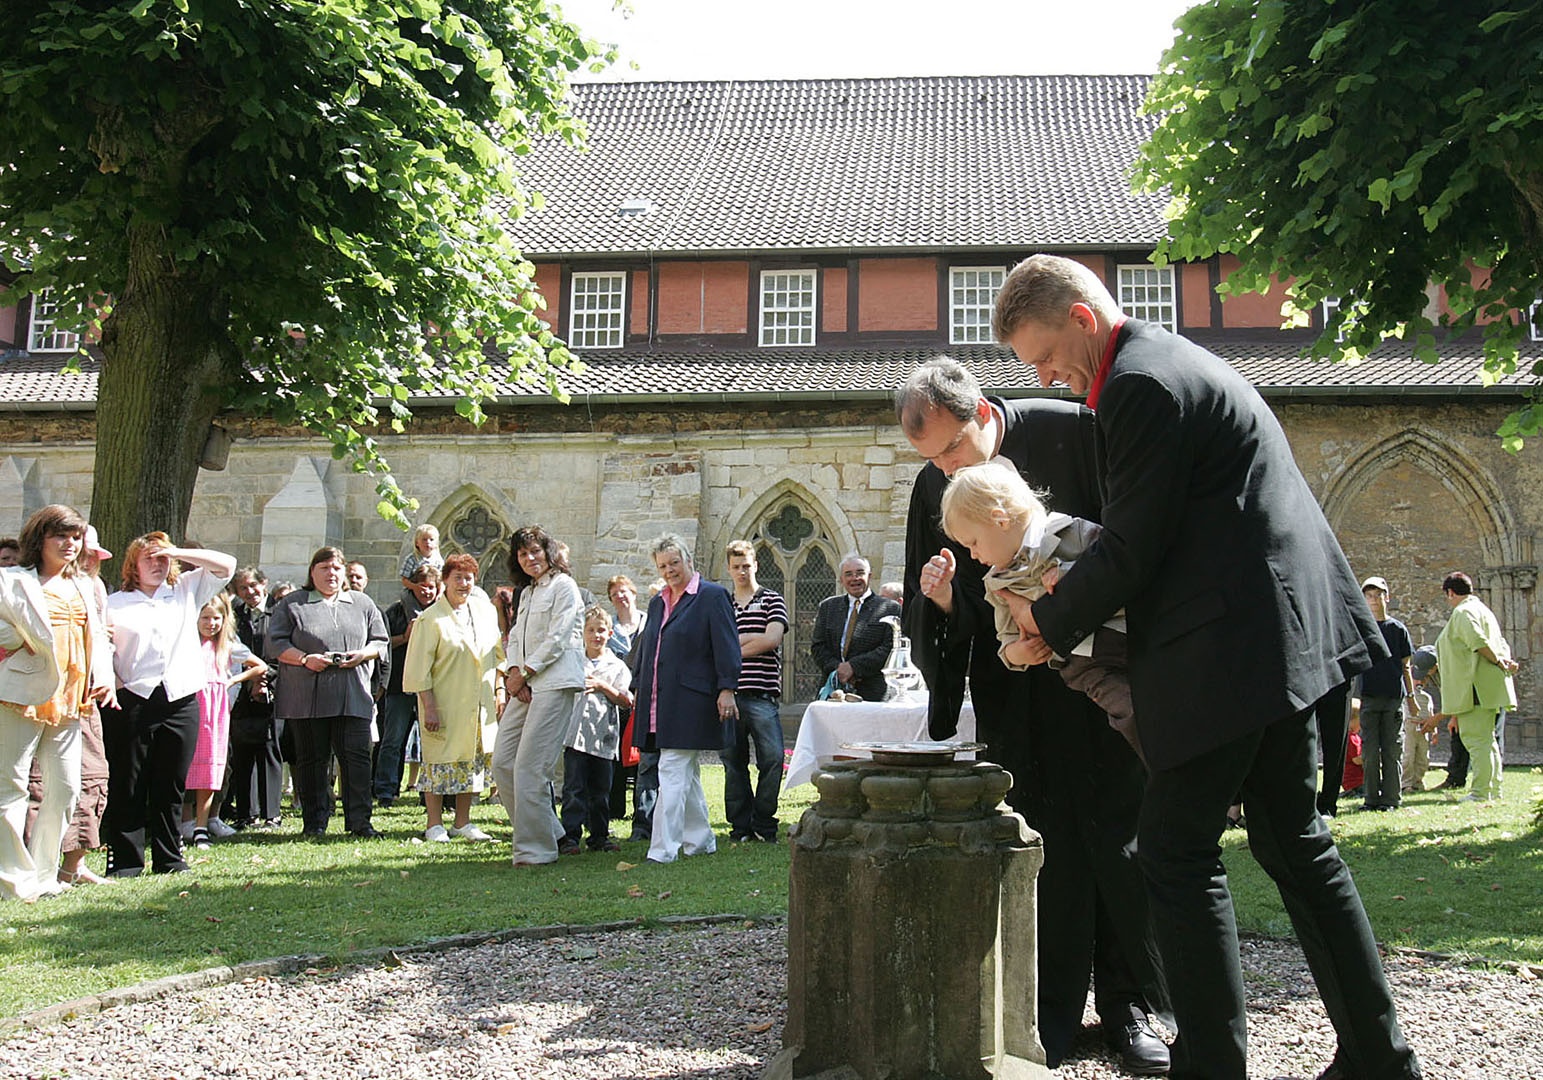 Taufe im Garten des Kloster Loccum